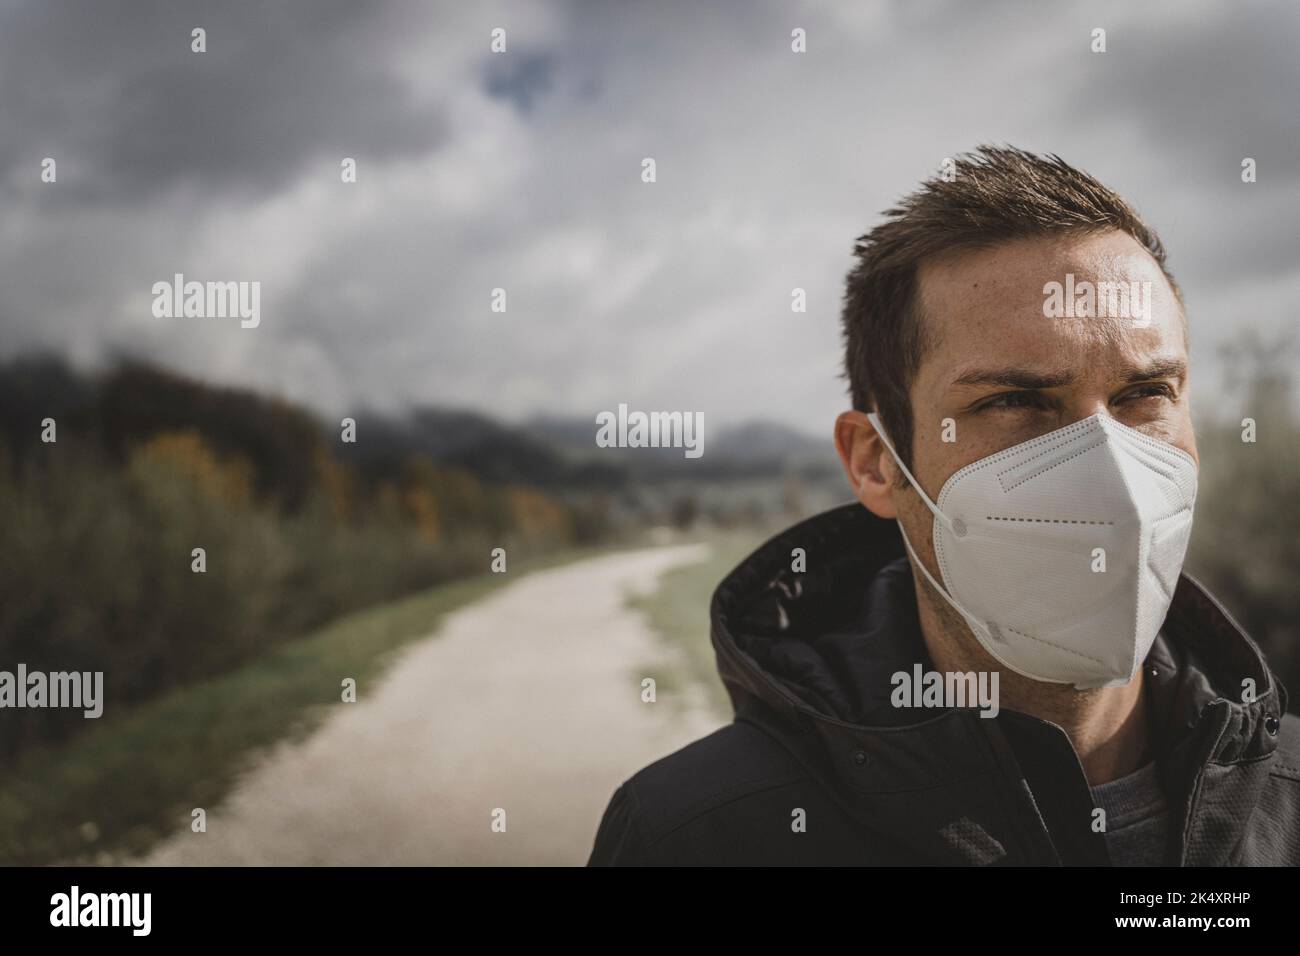 03 de octubre de 2022: El joven lleva la máscara FFP 2 durante la caminata al aire libre del otoño para protegerse contra el coronavirus, Covid 19. Imagen de símbolo Corona Otoño y. Foto de stock